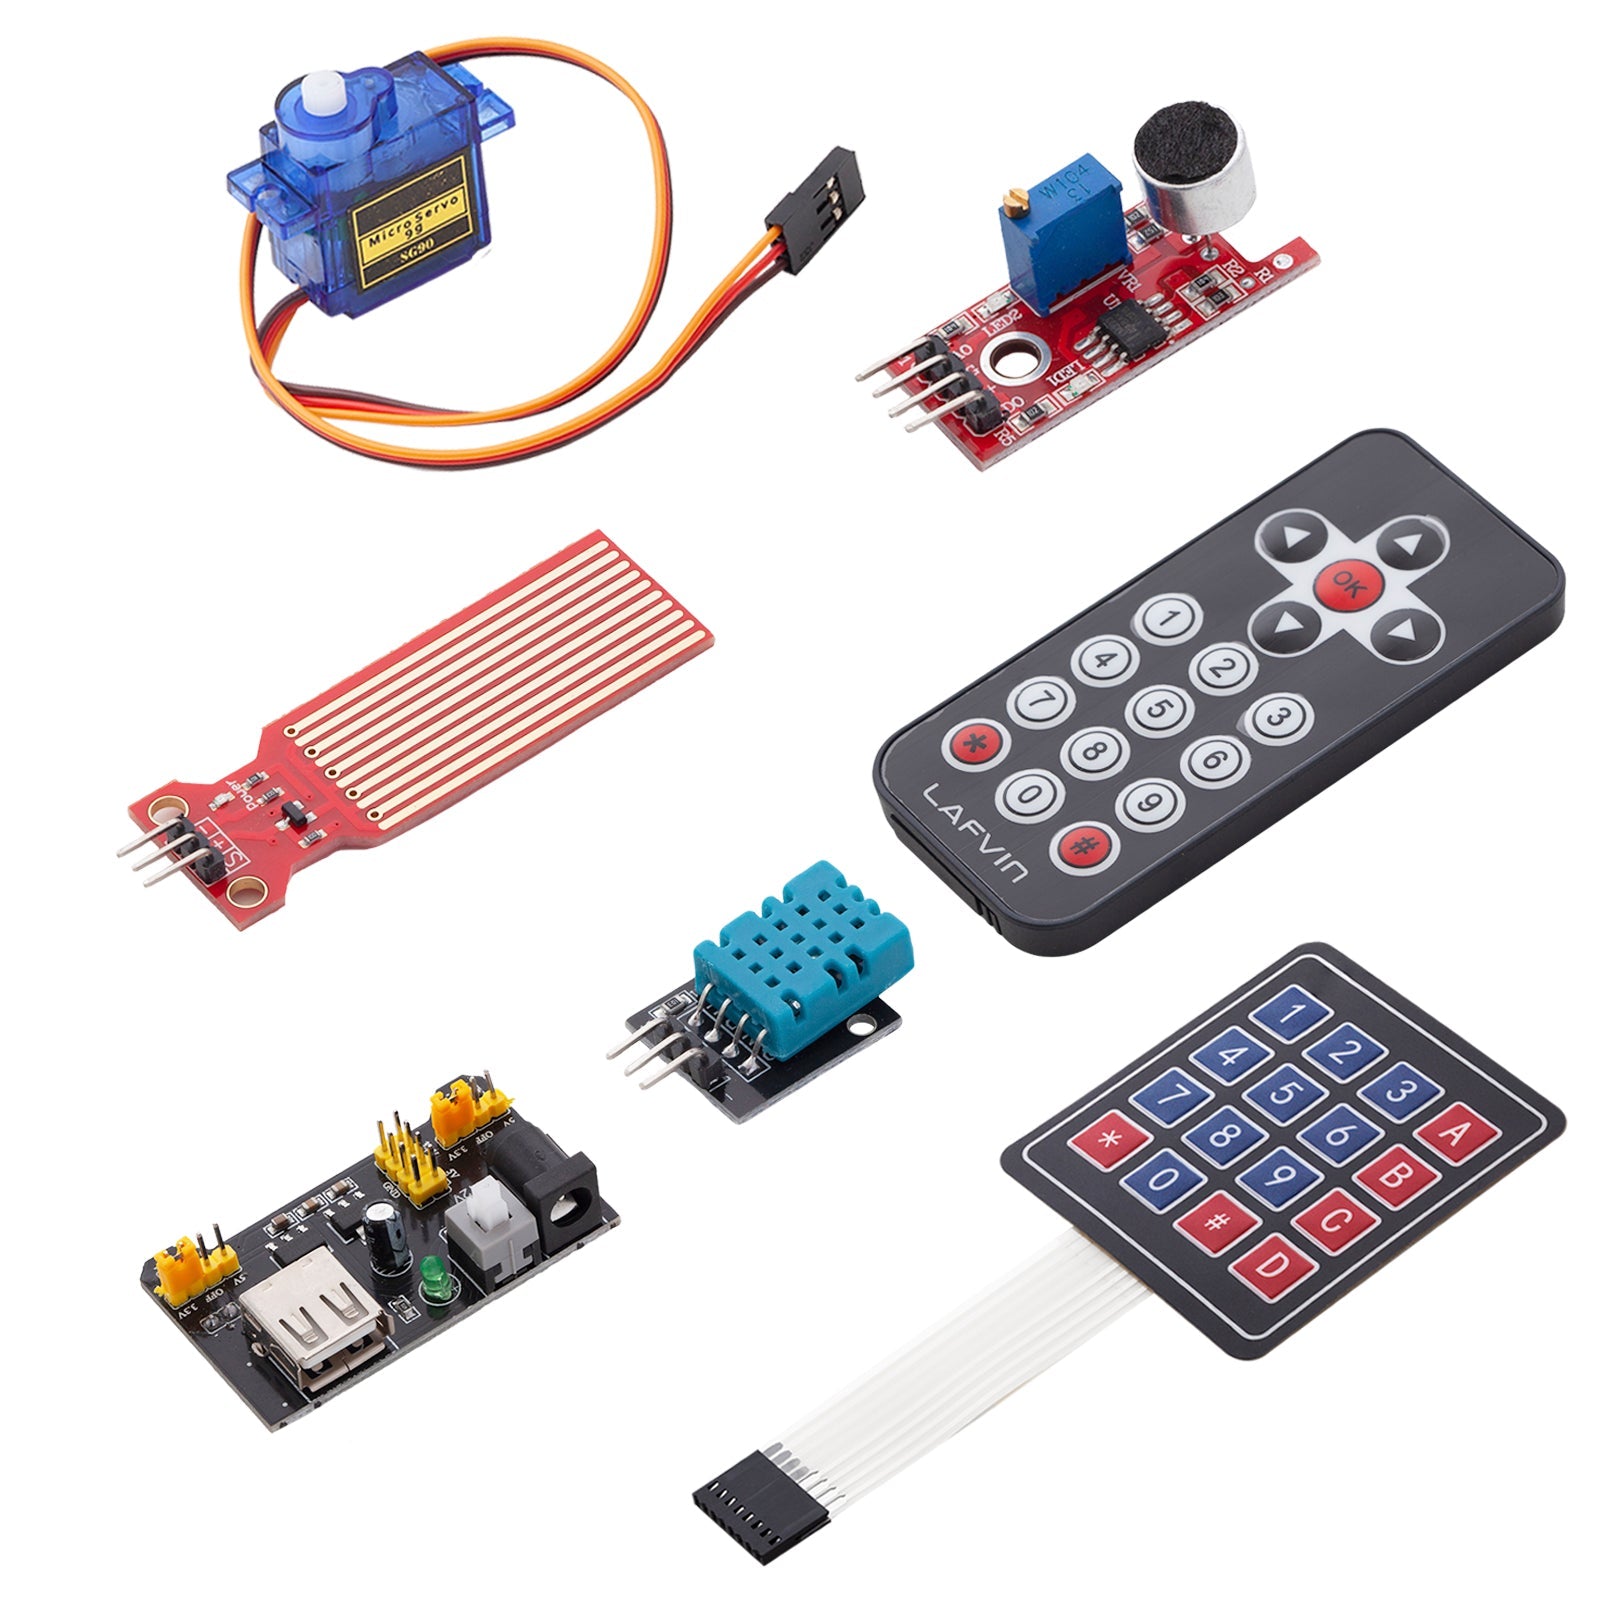 Elektronik Super Starter Kit Mikrocontroller Board, Stromversorgungsmodul, Servo-, Schritt- und Gleichstrommotoren Sensor Kit kompatibel mit Arduino - AZ-Delivery